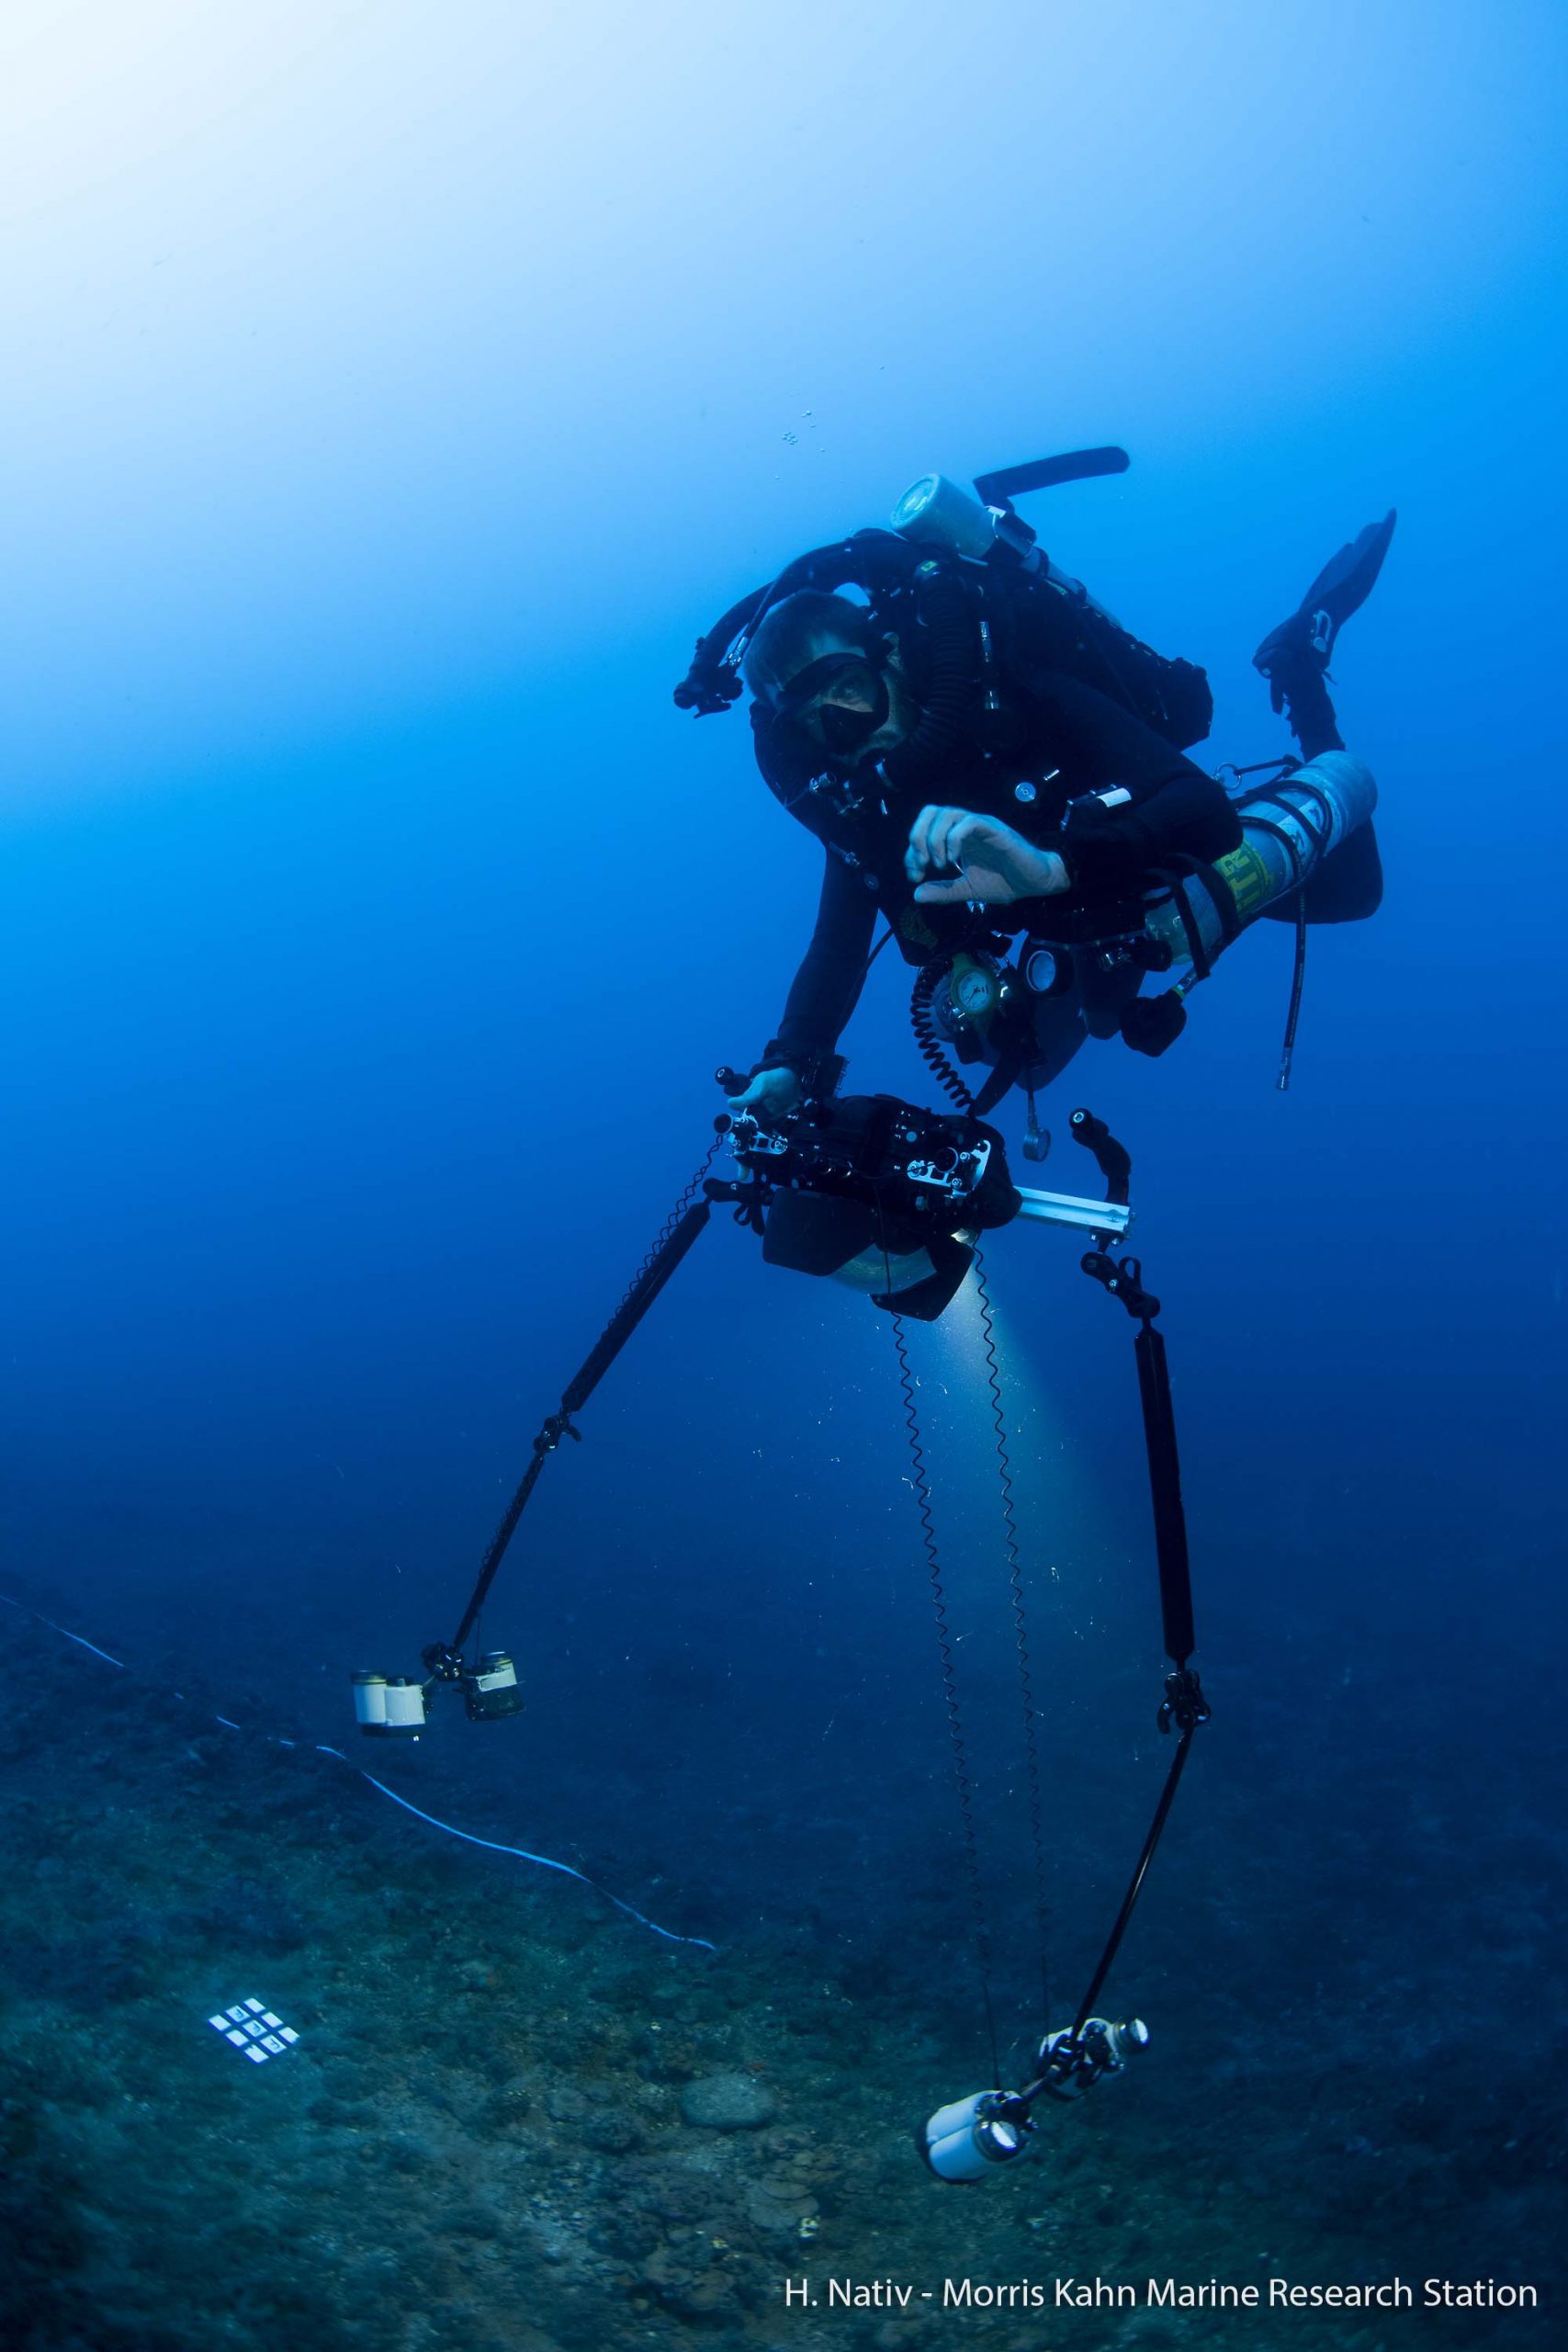 Matan Yuval with his underwater photogrametry equipment